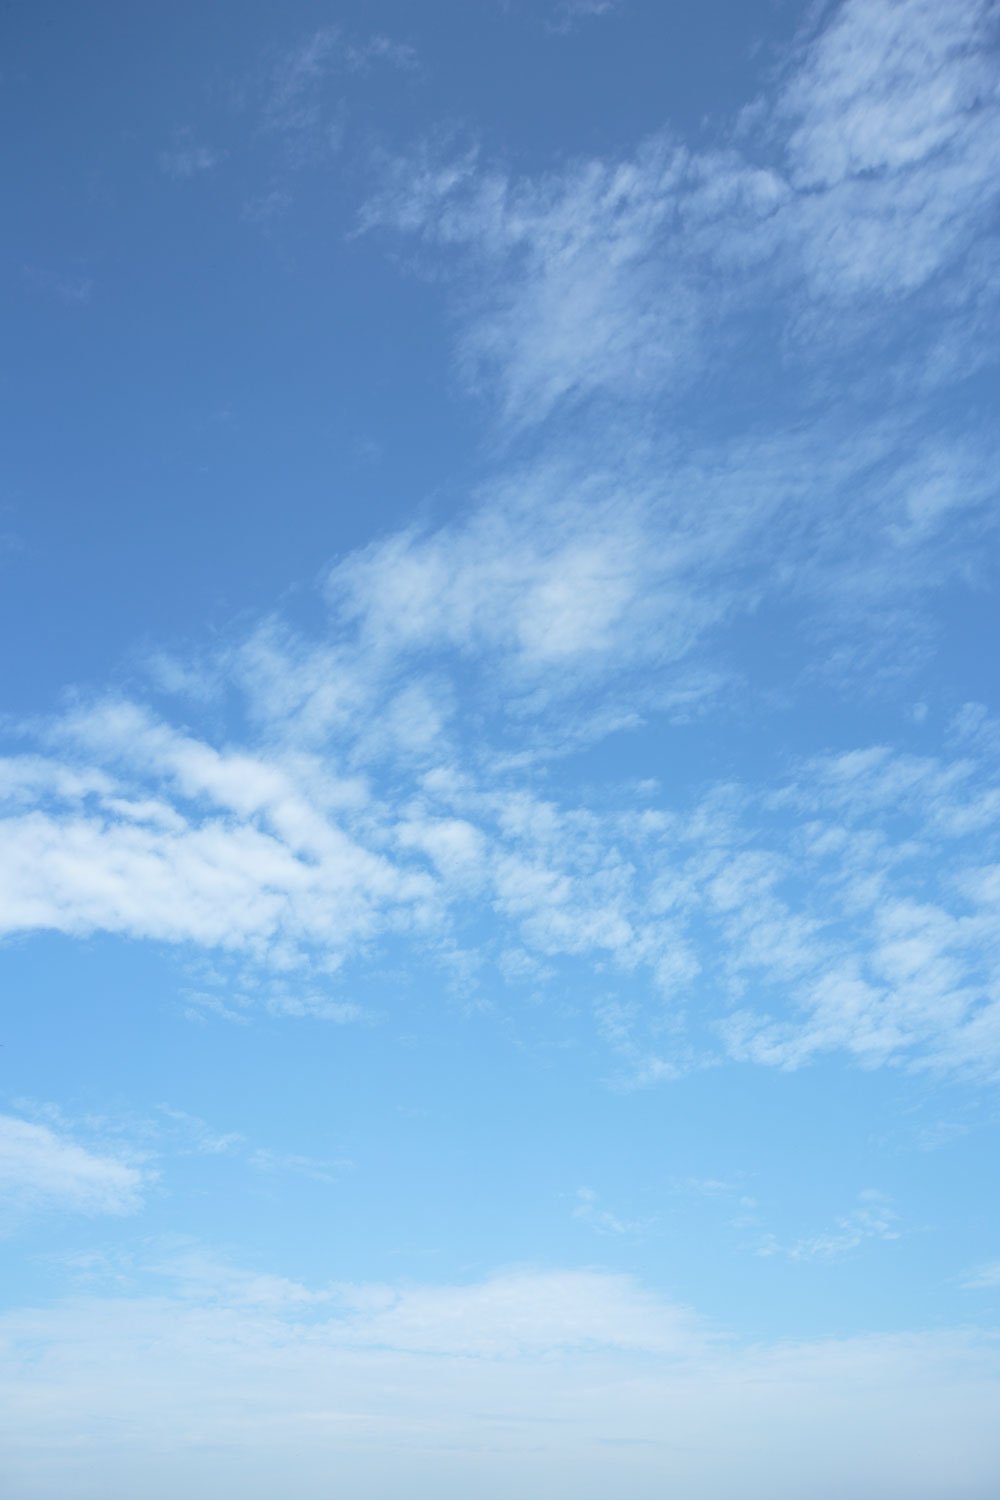 I78l 47 青空と雲 縦画像 縦画像 花ざかりの森